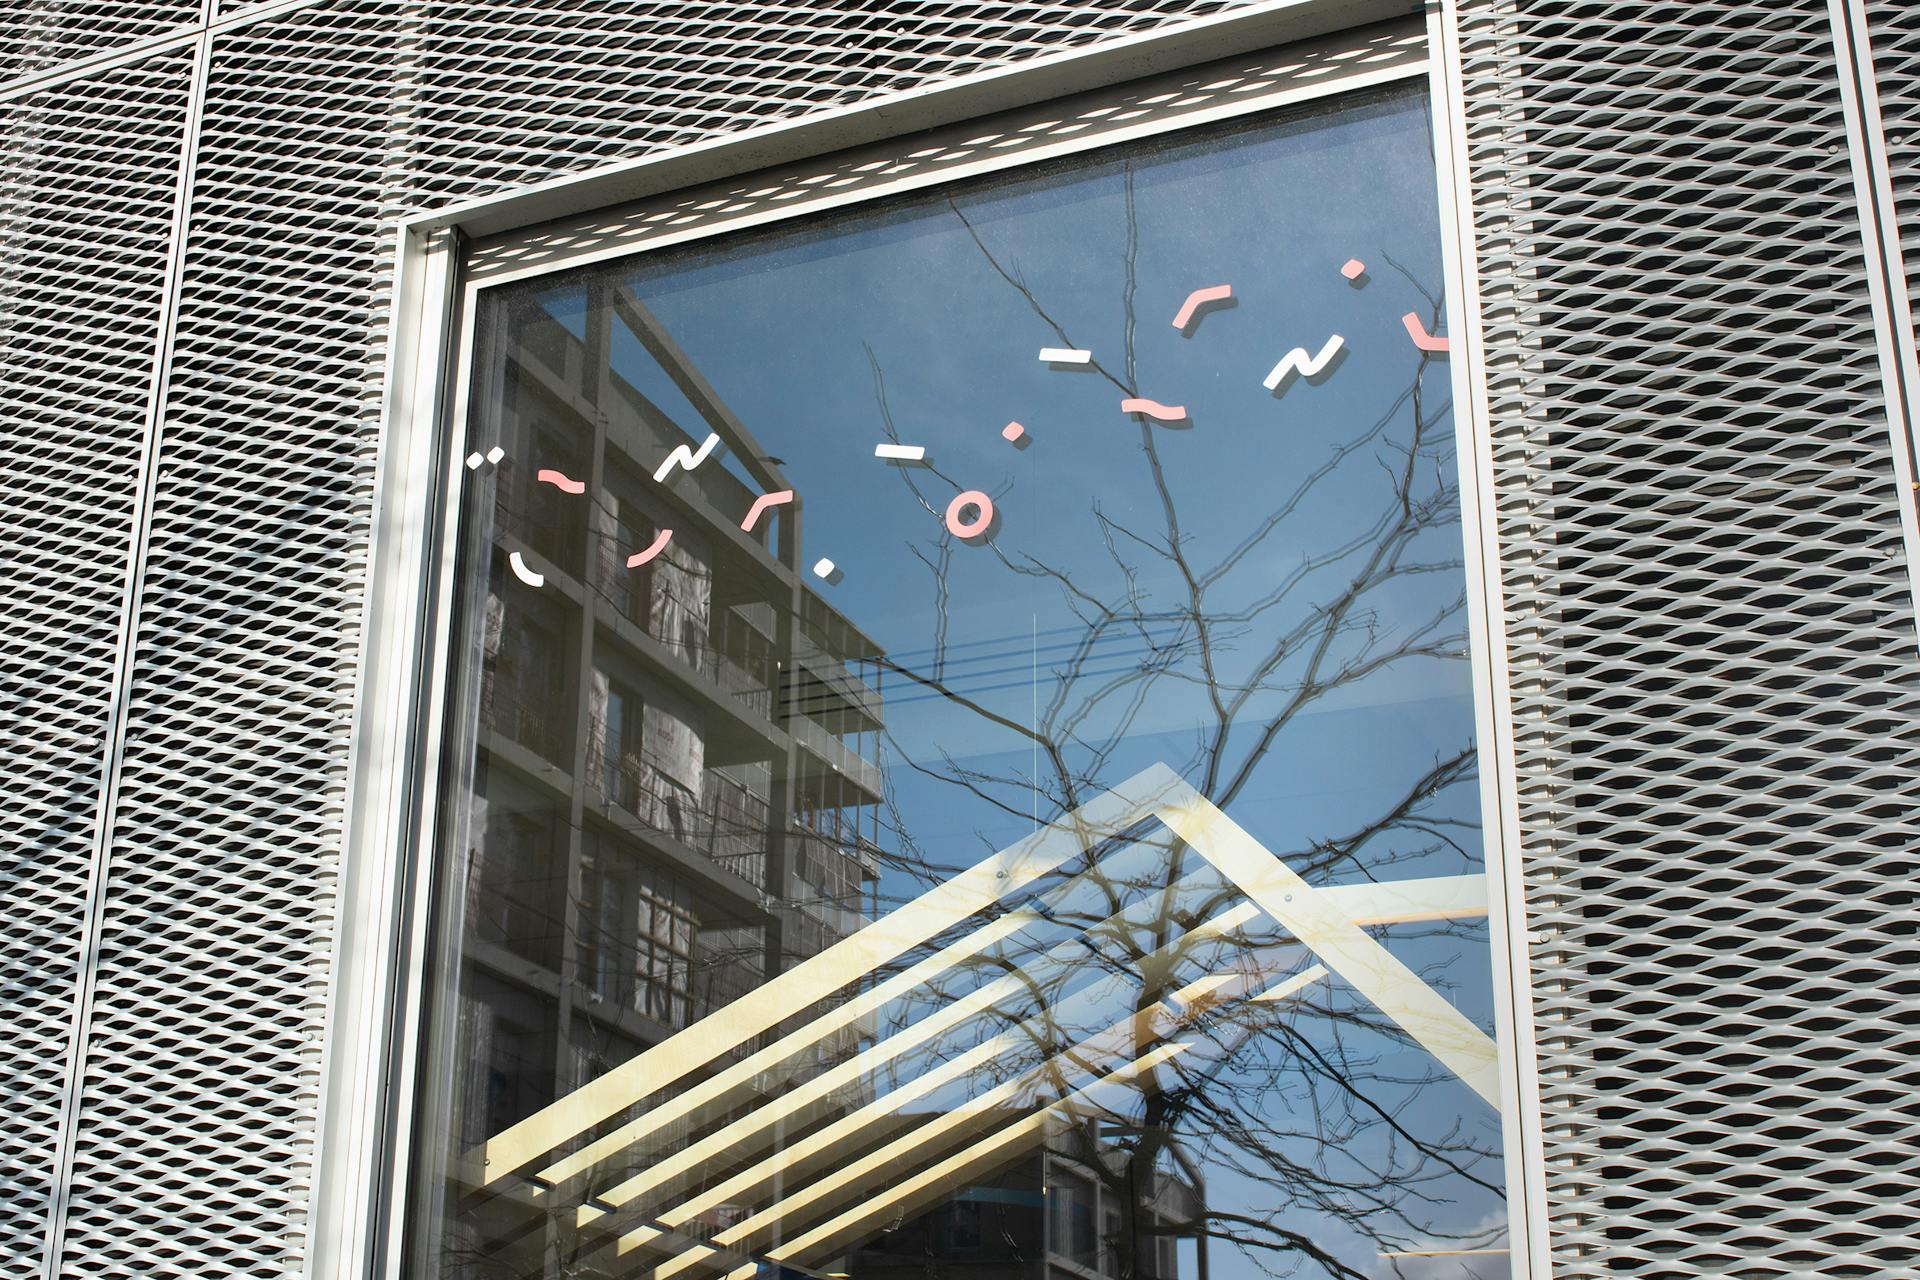 Des stickers issus de la nouvelle charte graphique d'Europa Nantes collés sur la paroi d'une fenêtre.